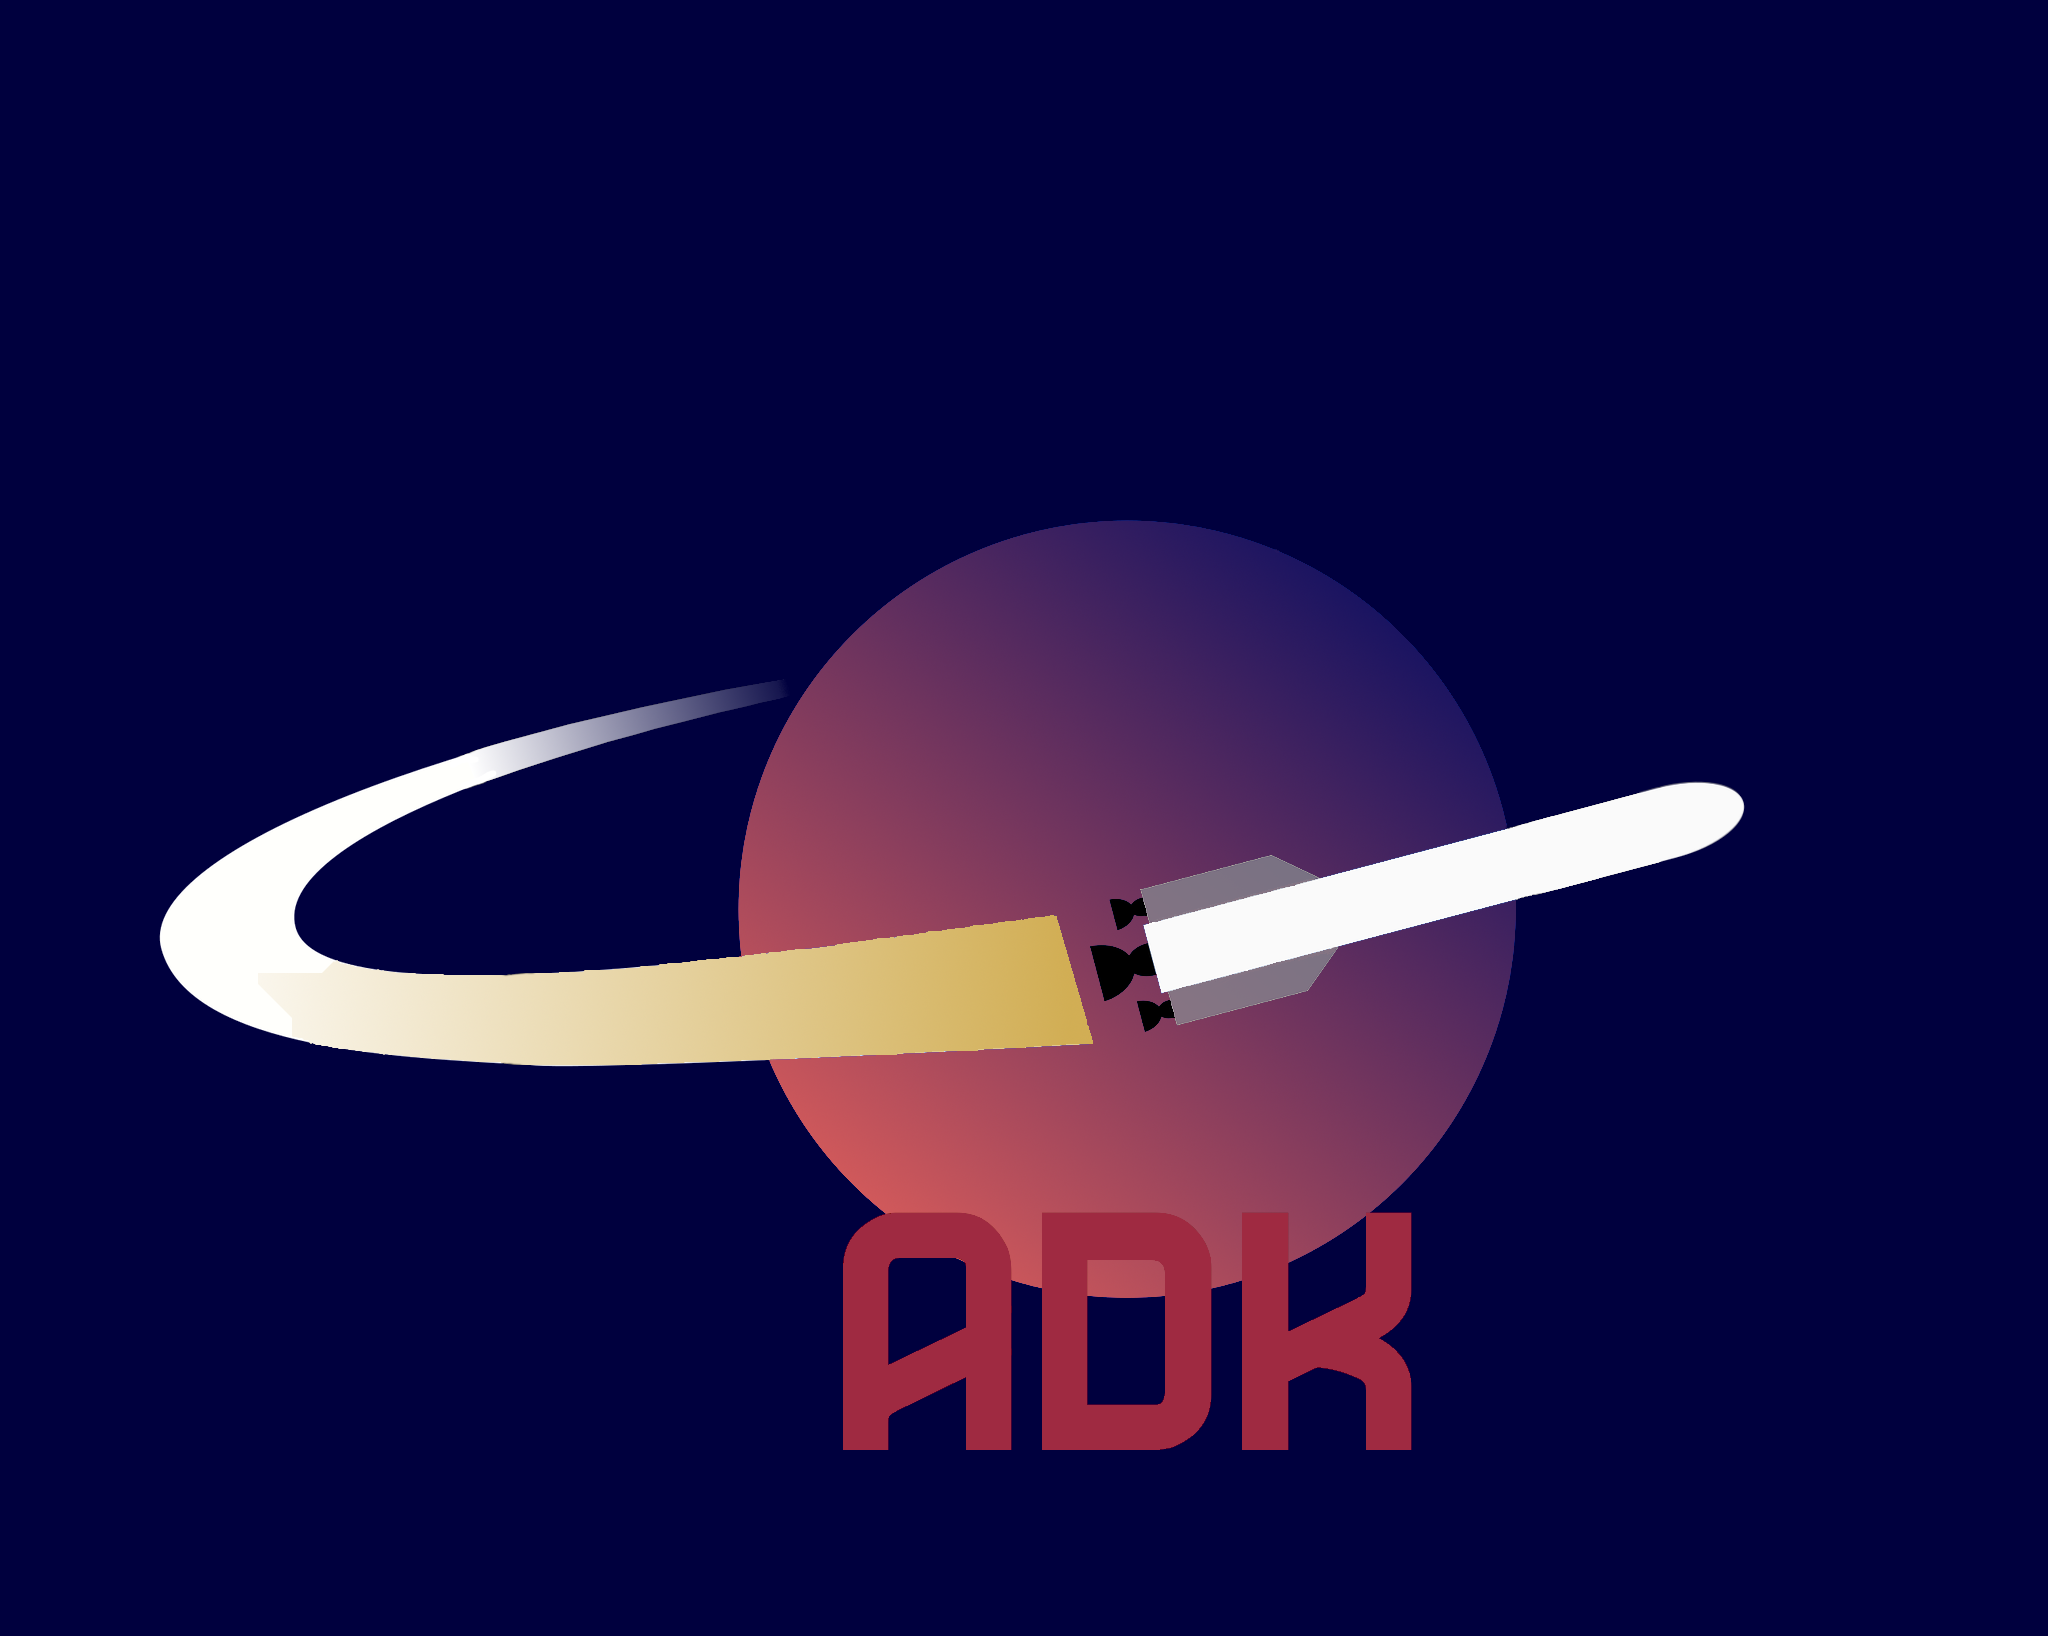 ADK_logo_final